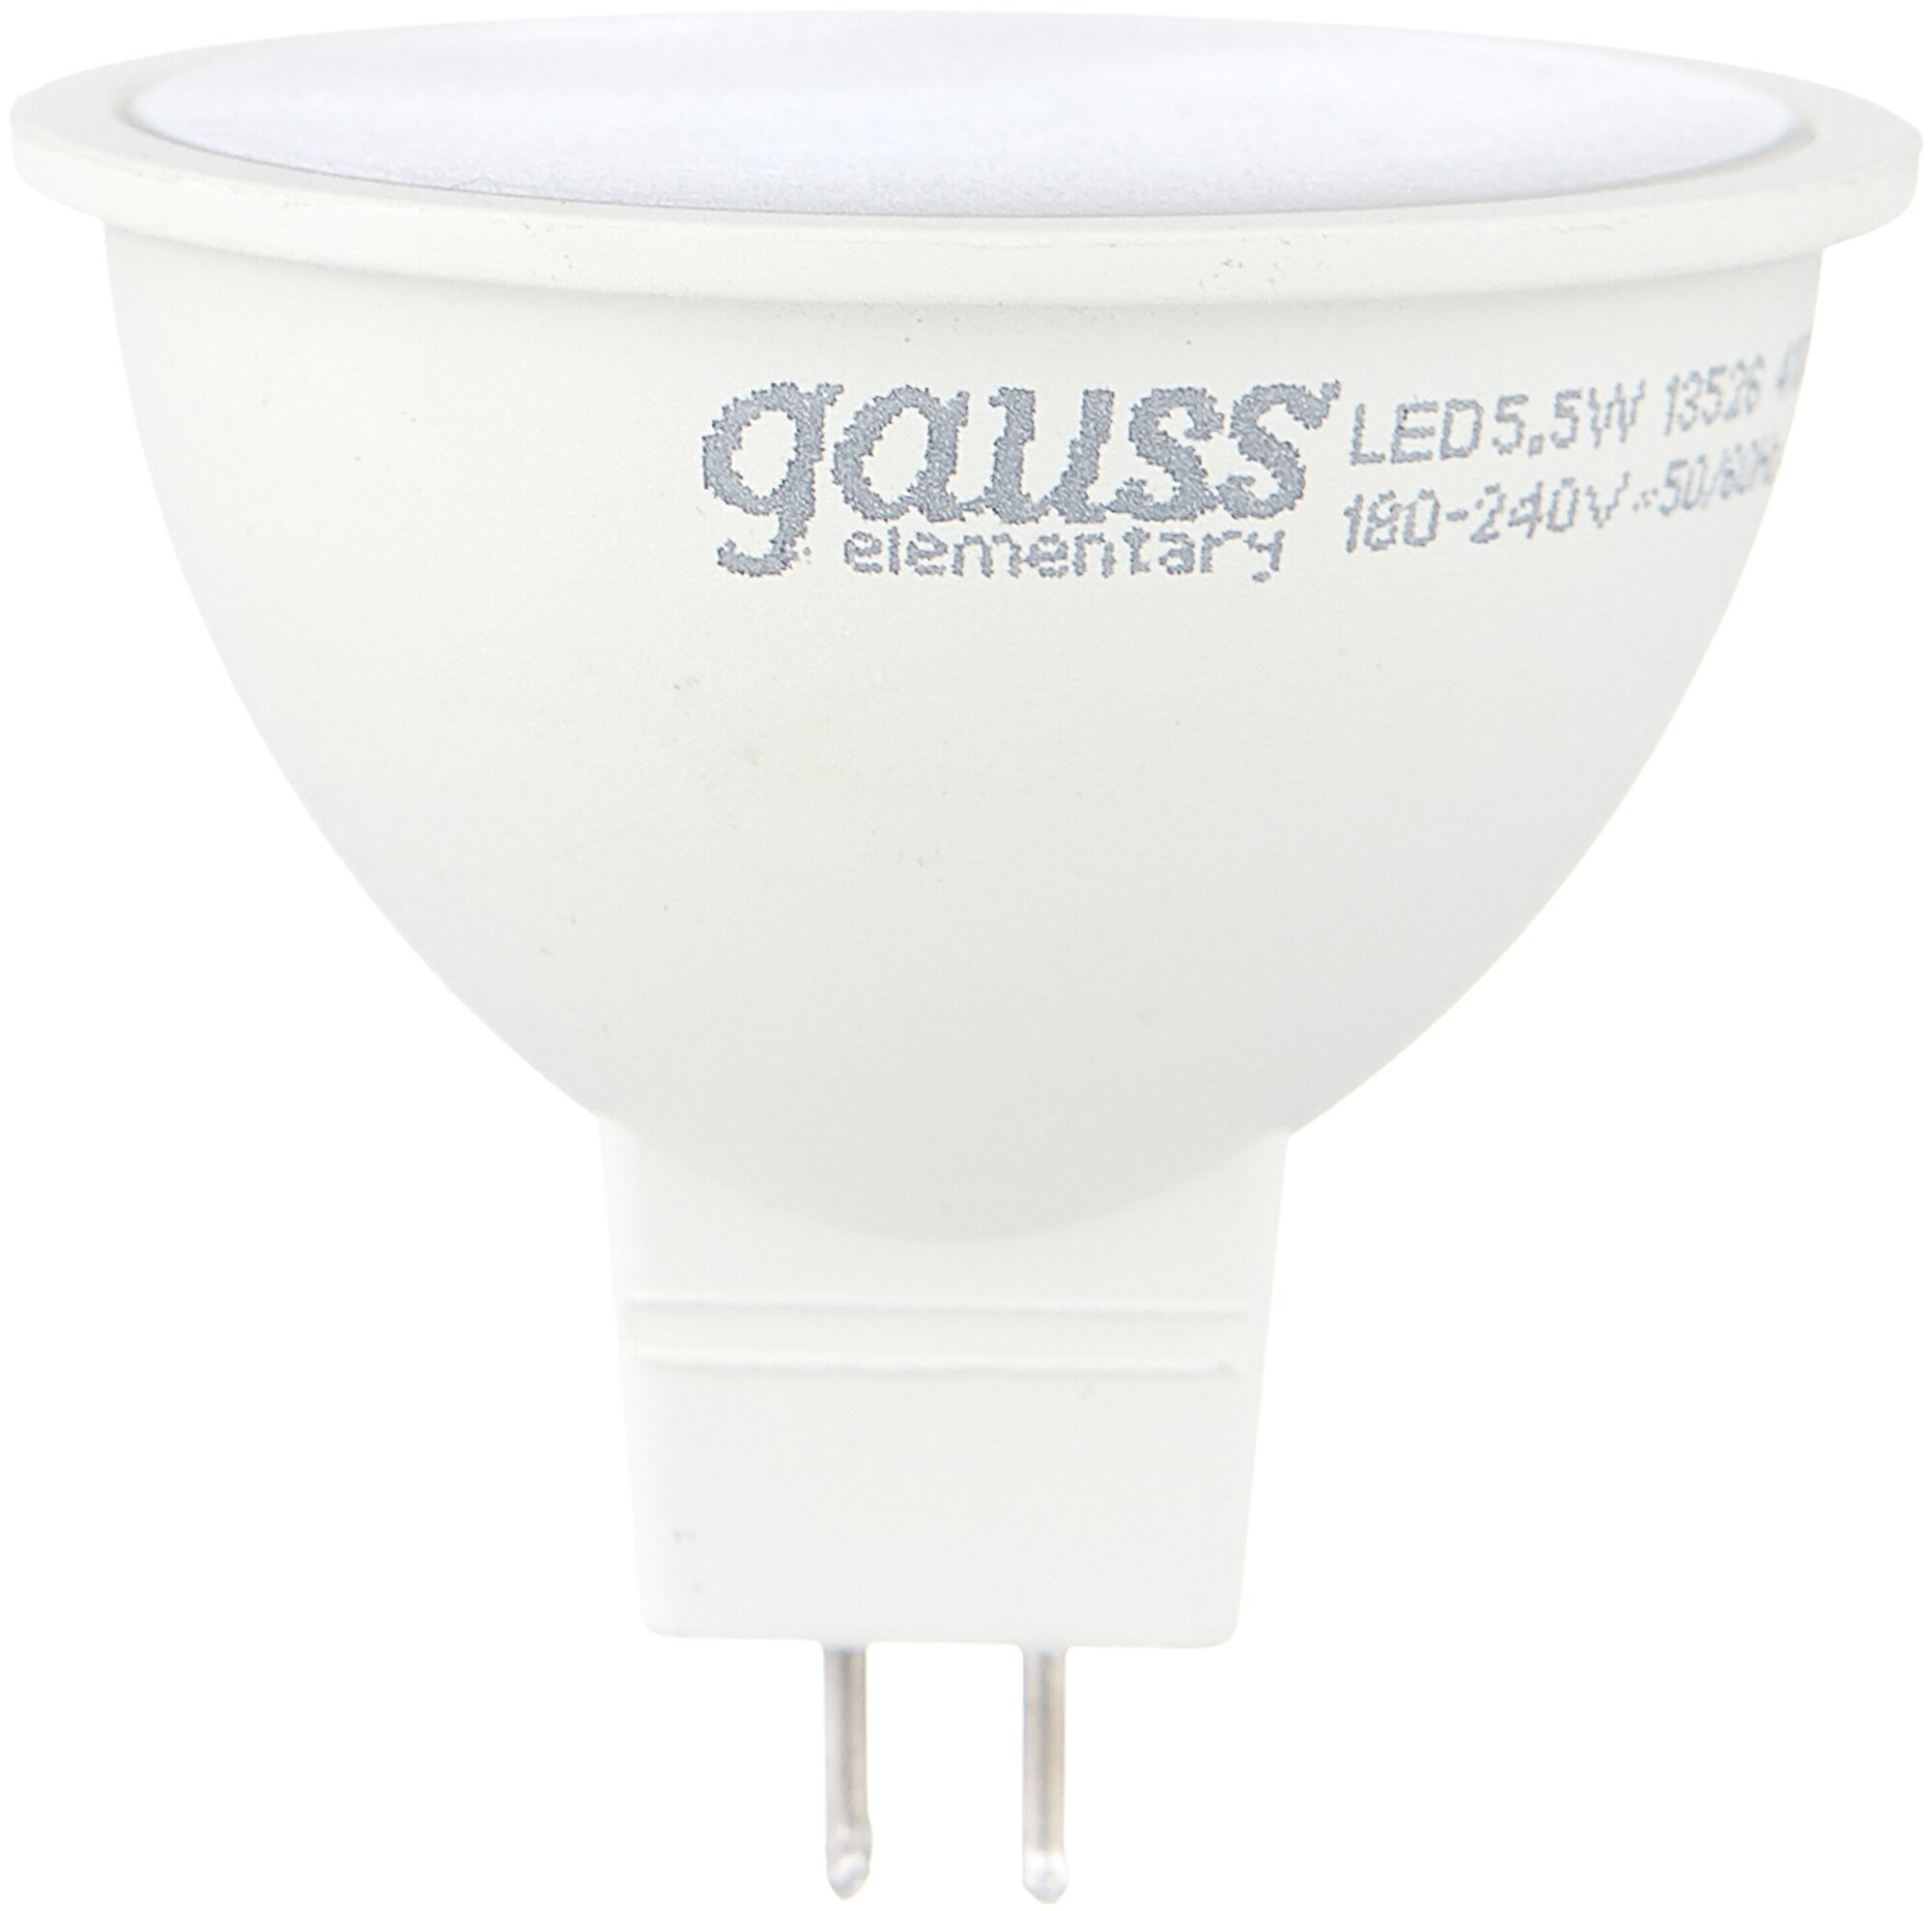 Комплект светодиодных лампочек GAUSS Elementary(MR16) 5.5Вт цок.:GU5.3 спот 220B 4100K св.свеч.бел.нейт. (упак.:10шт) (13526)